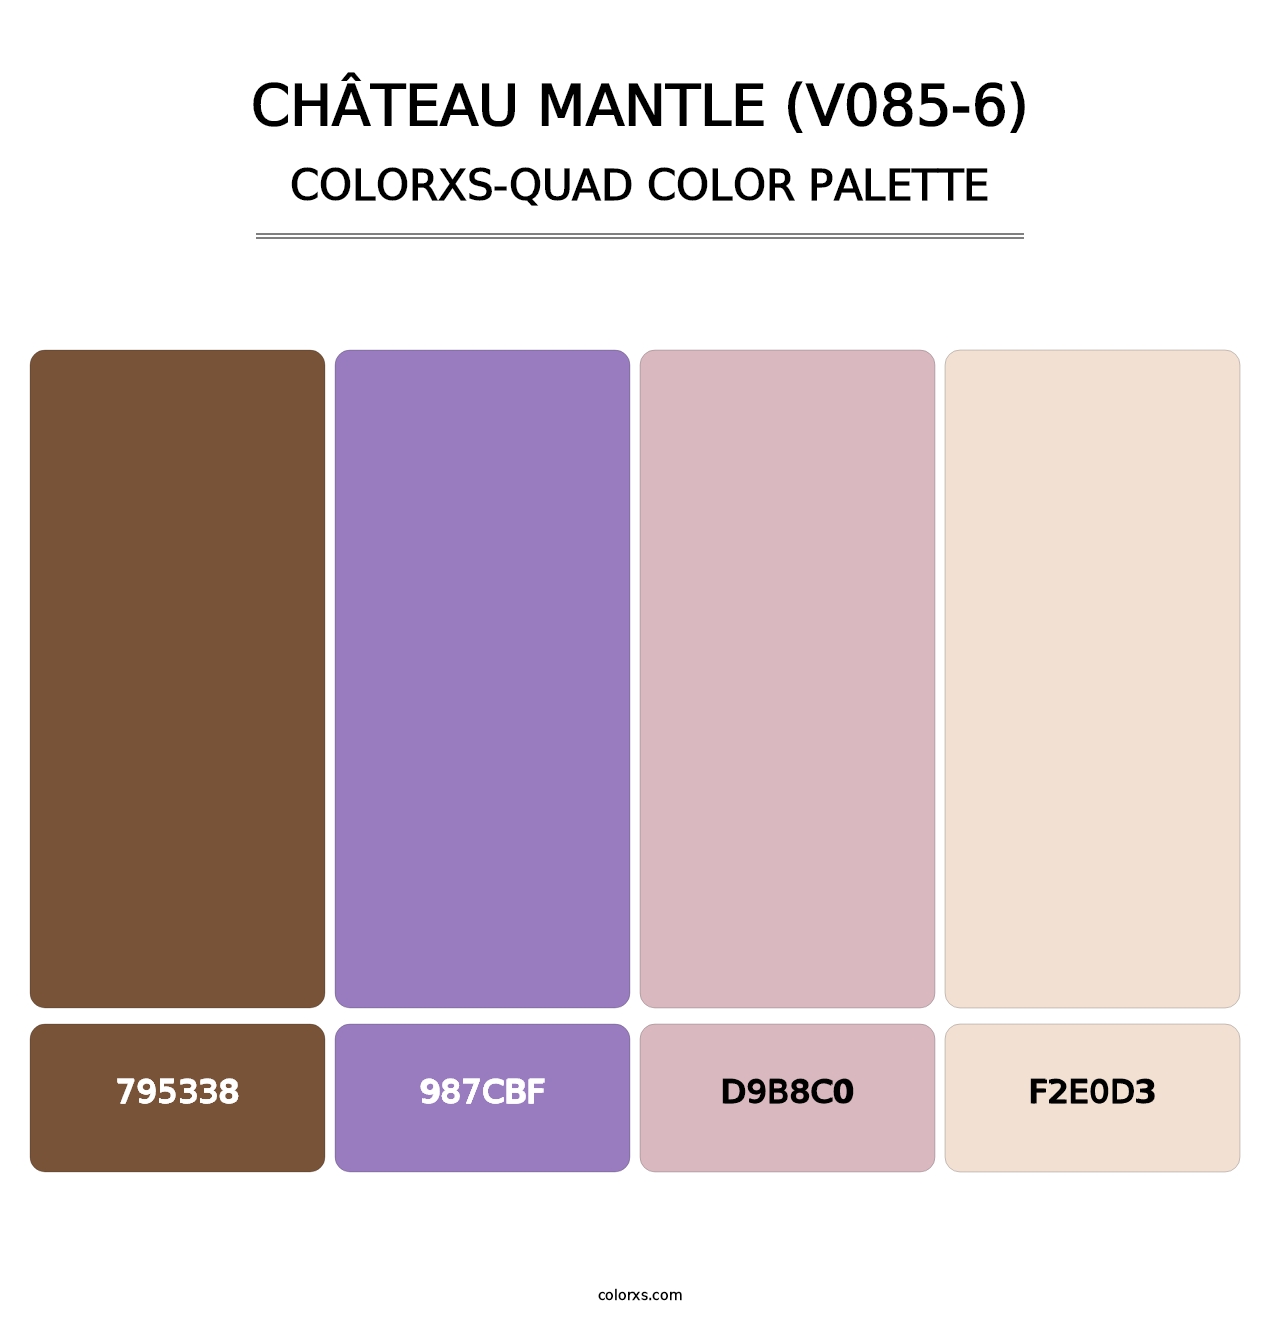 Château Mantle (V085-6) - Colorxs Quad Palette